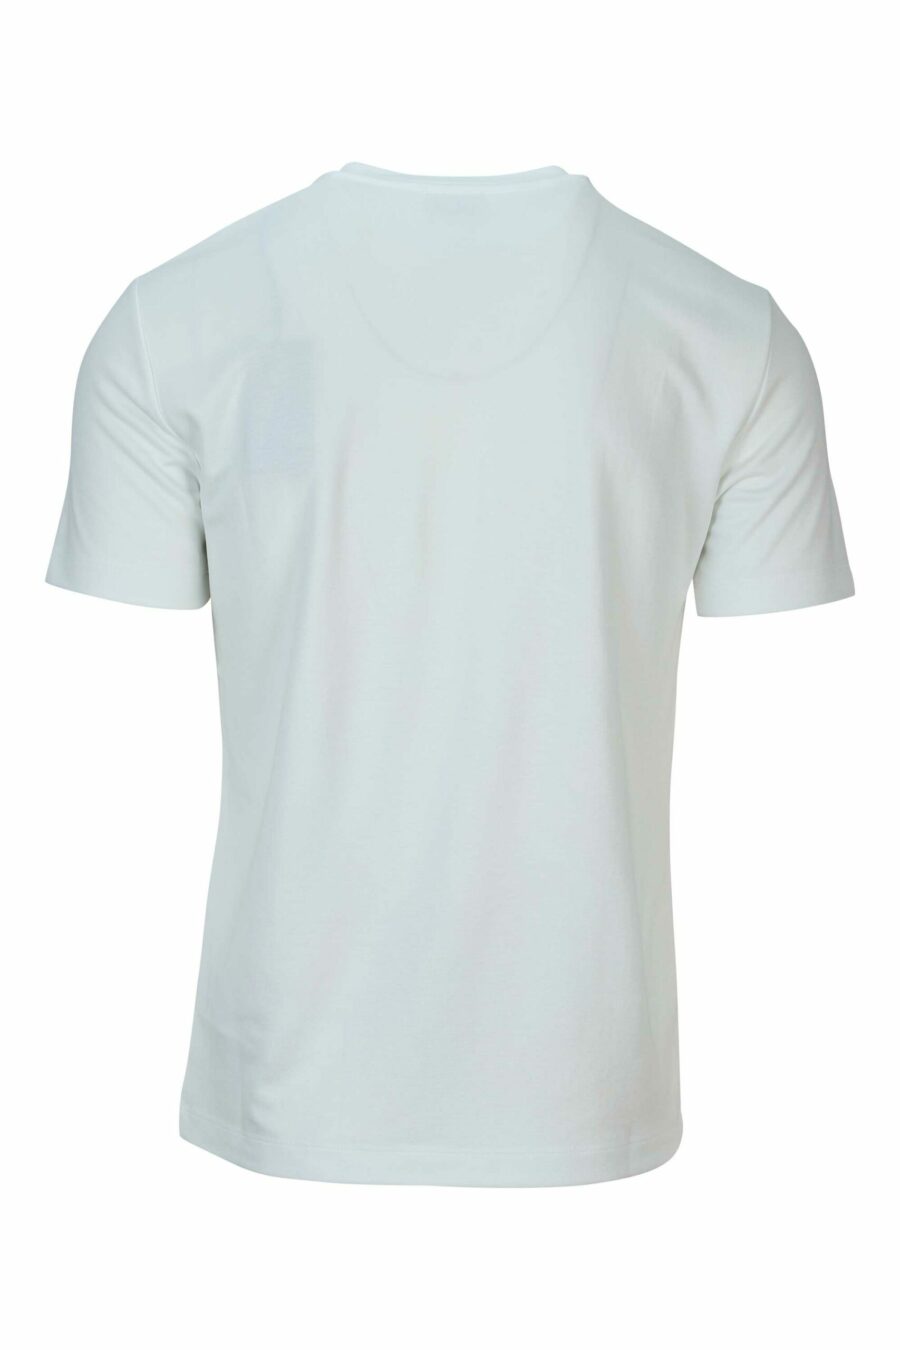 Weißes Oversize-T-Shirt mit weißem "lux identity"-Mini-Logo auf schwarzer Platte - 8058947508495 1 skaliert